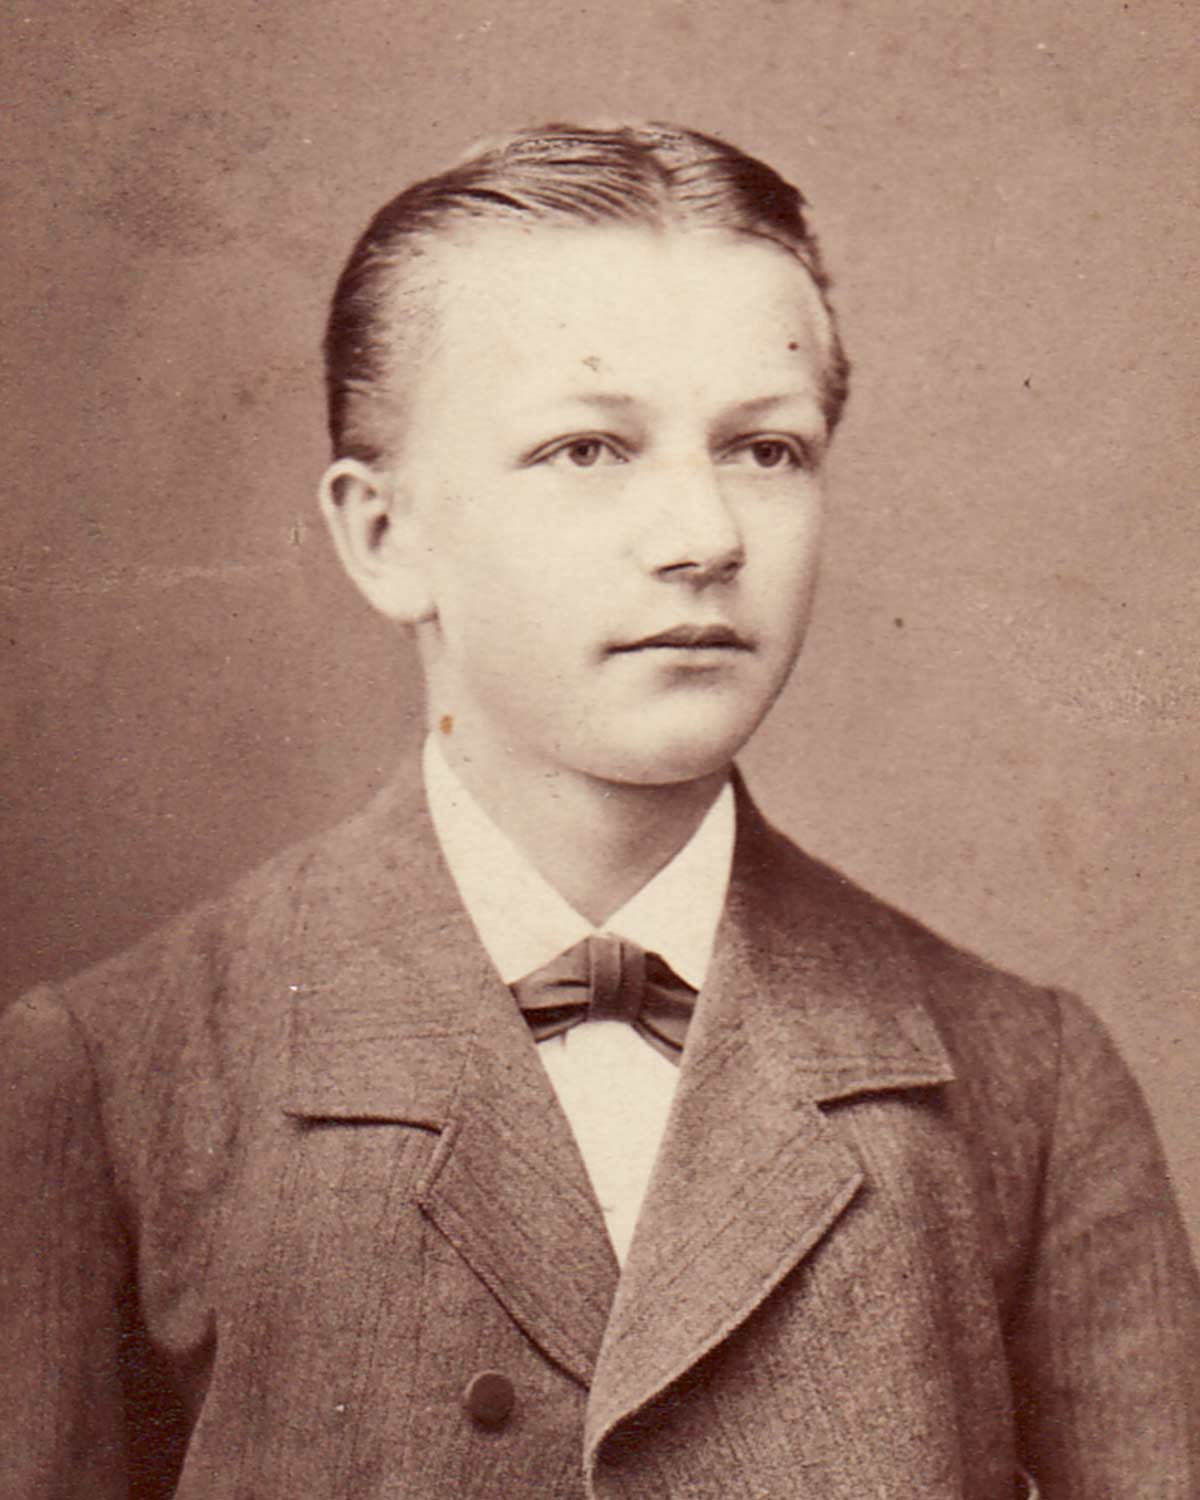 Daniel Swarovski um 1880 mit etwa 18 Jahren